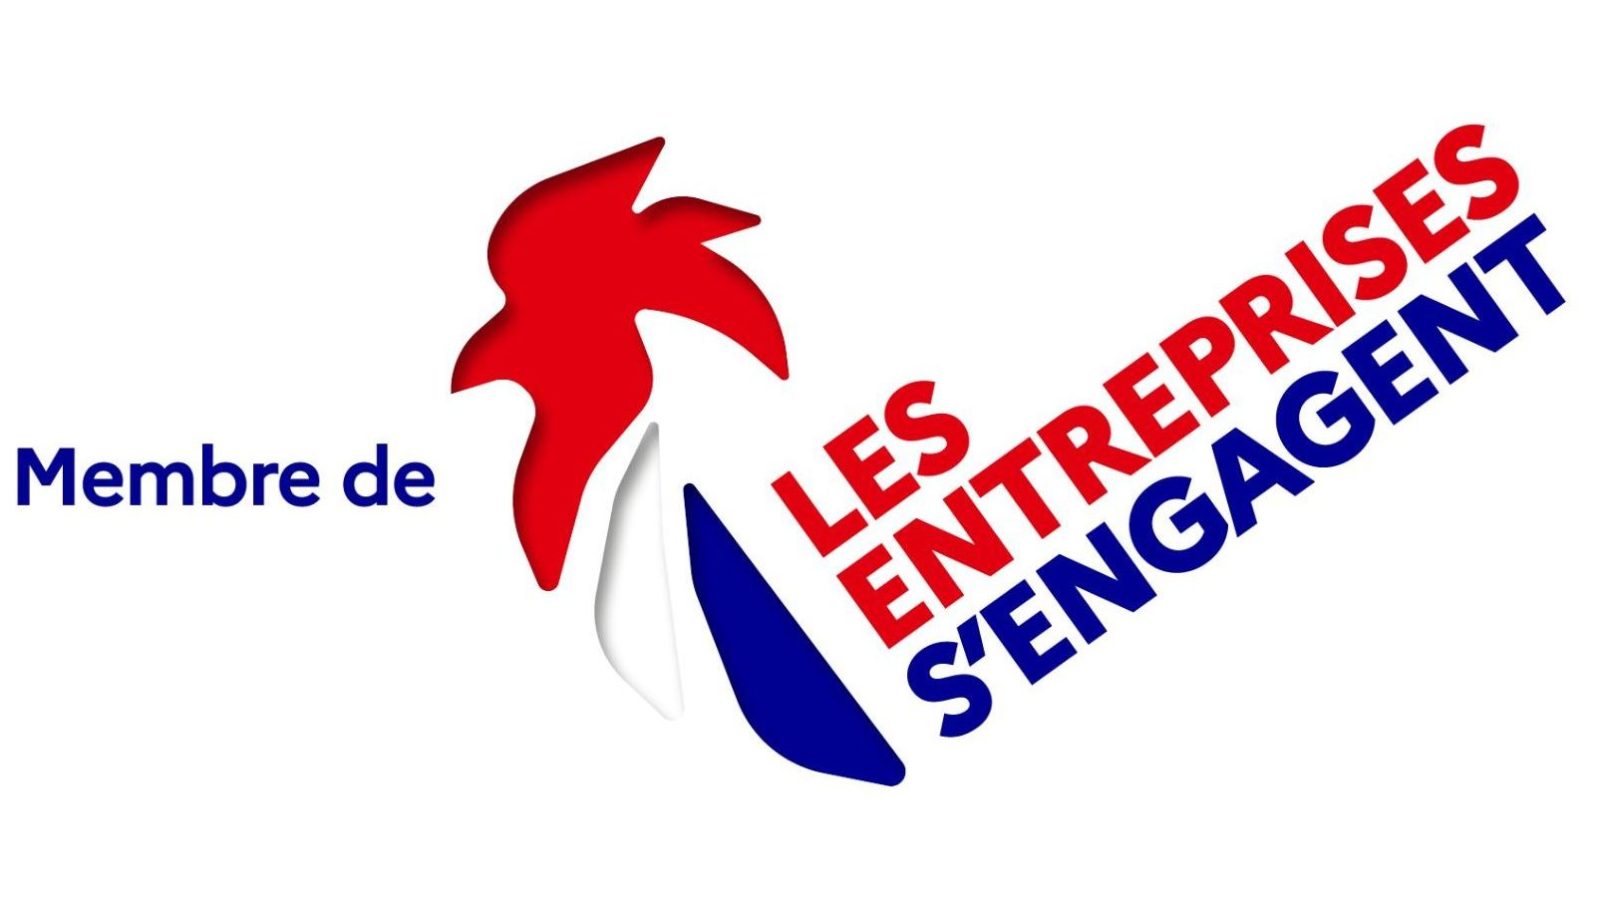 You are currently viewing Amalthee, Acteur Engagé au Cœur de la Communauté “Les Entreprises s’Engagent”